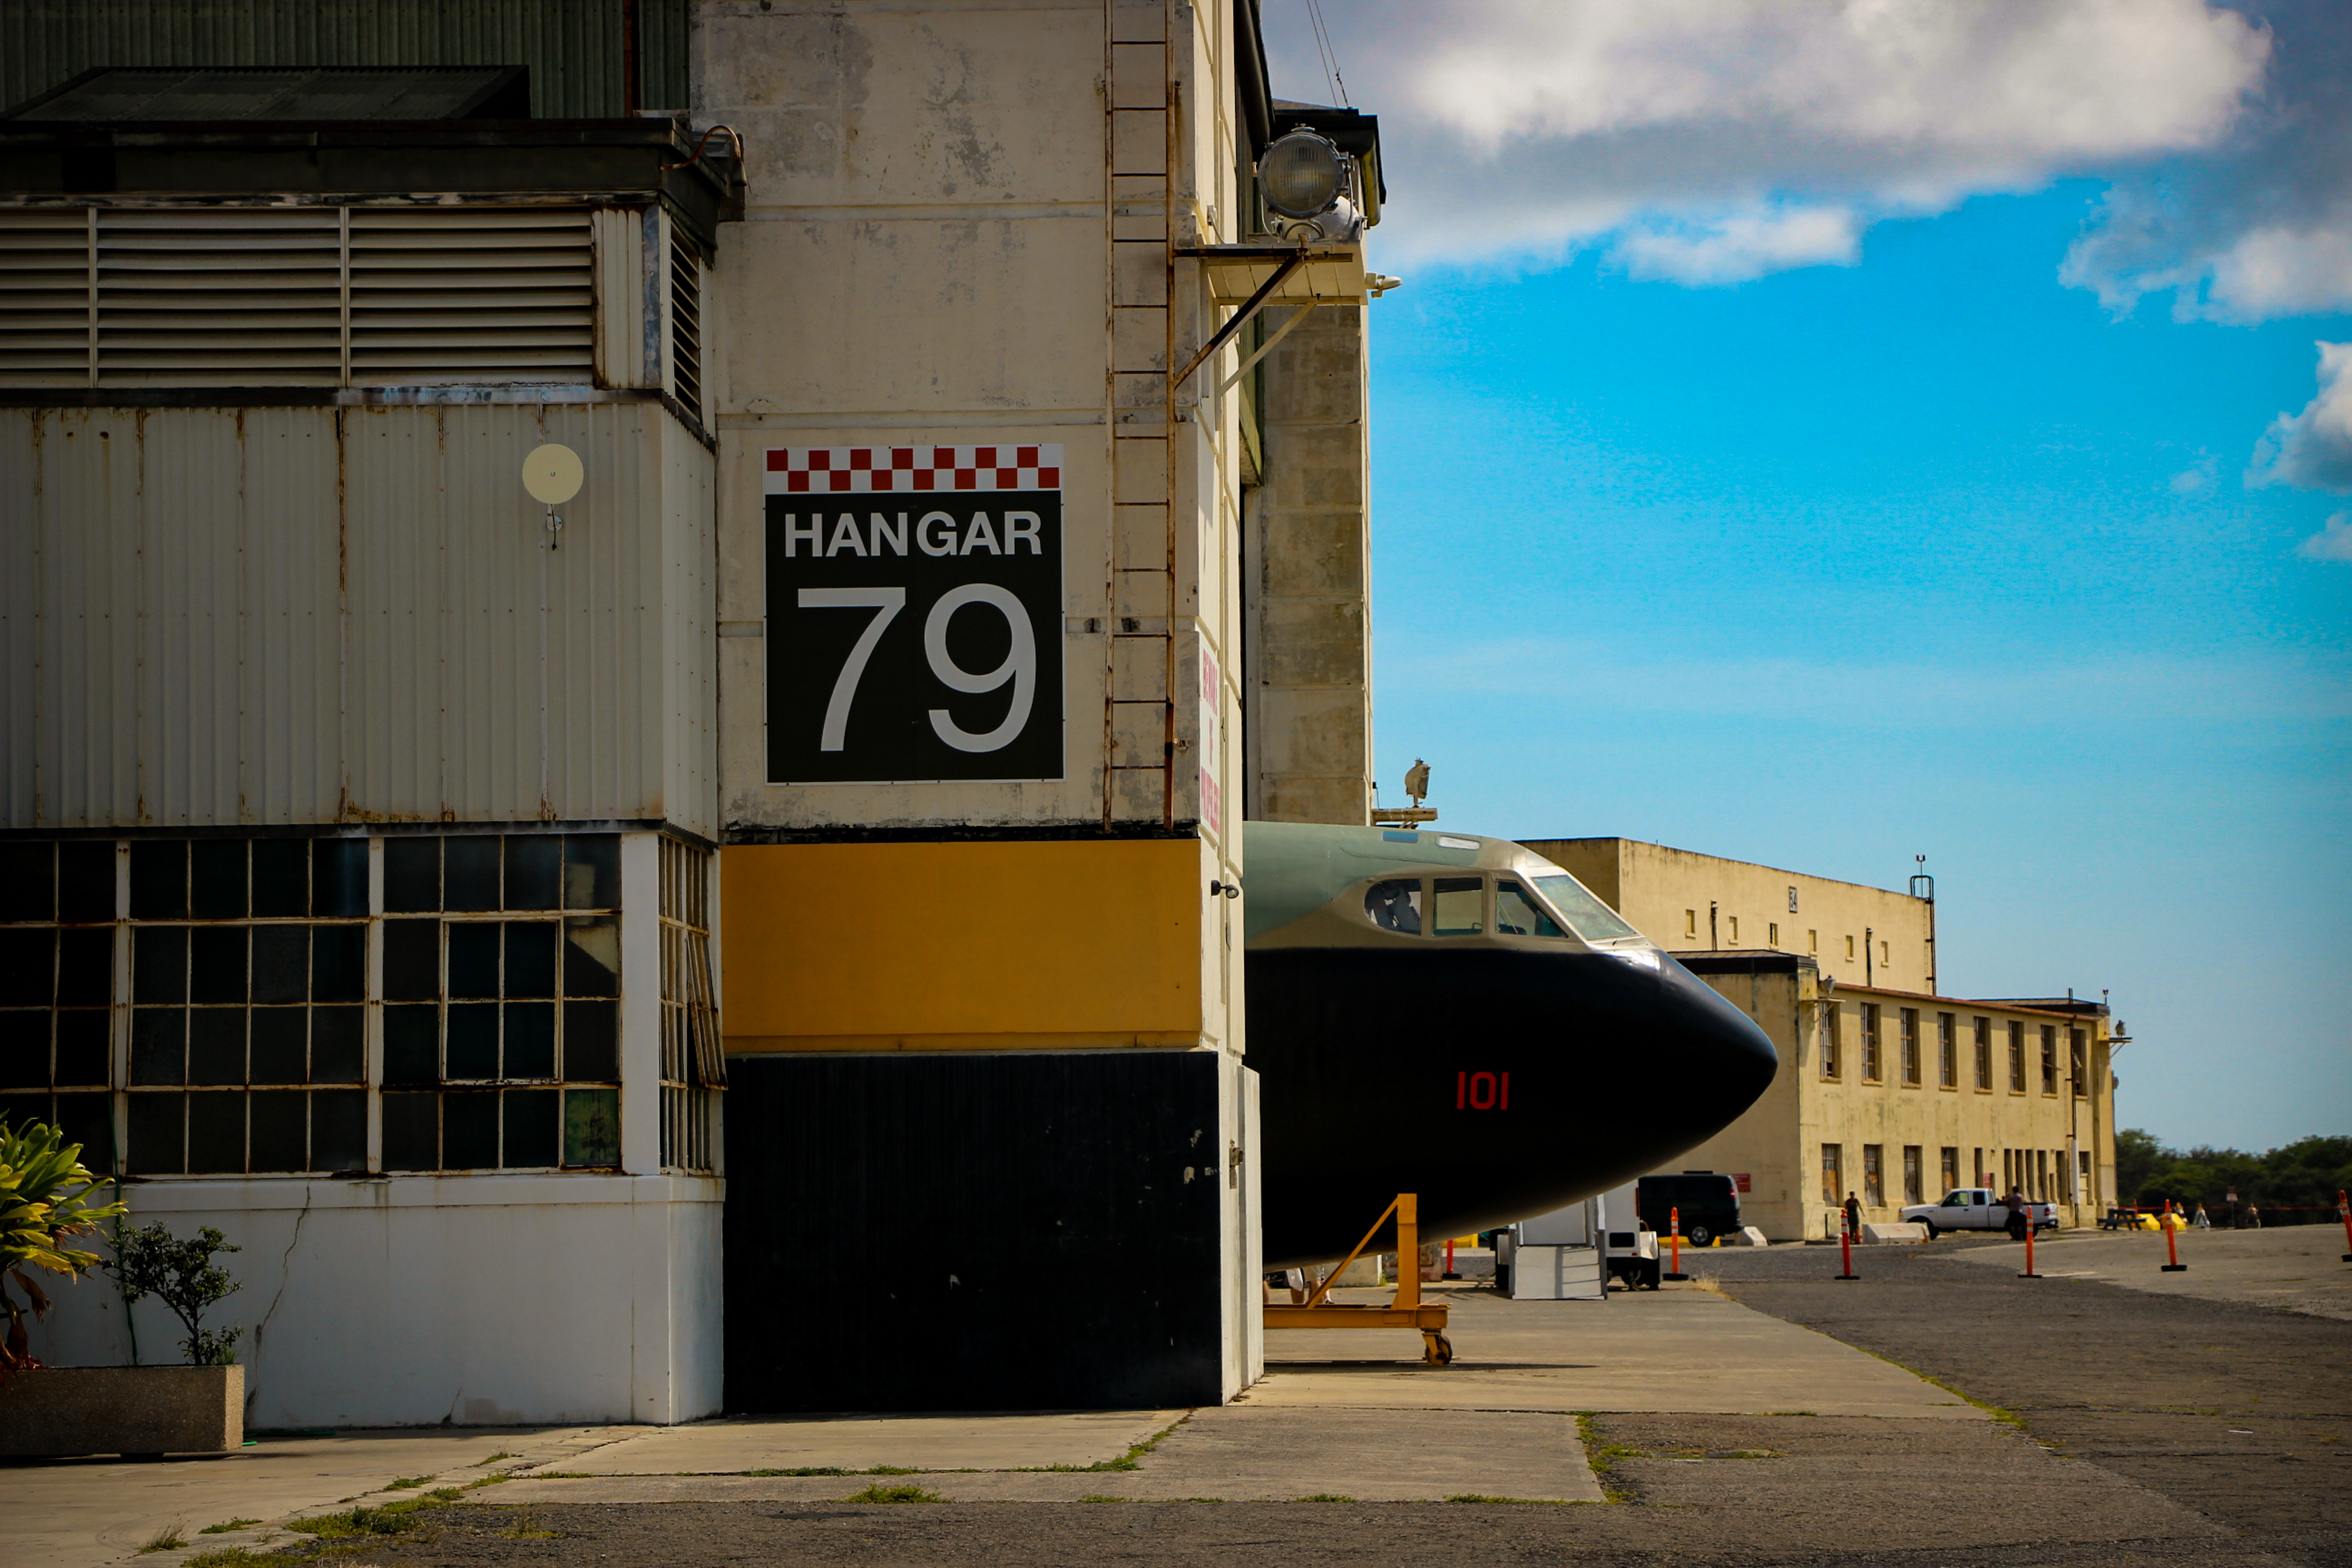 PEARL HARBOR Hangar 79